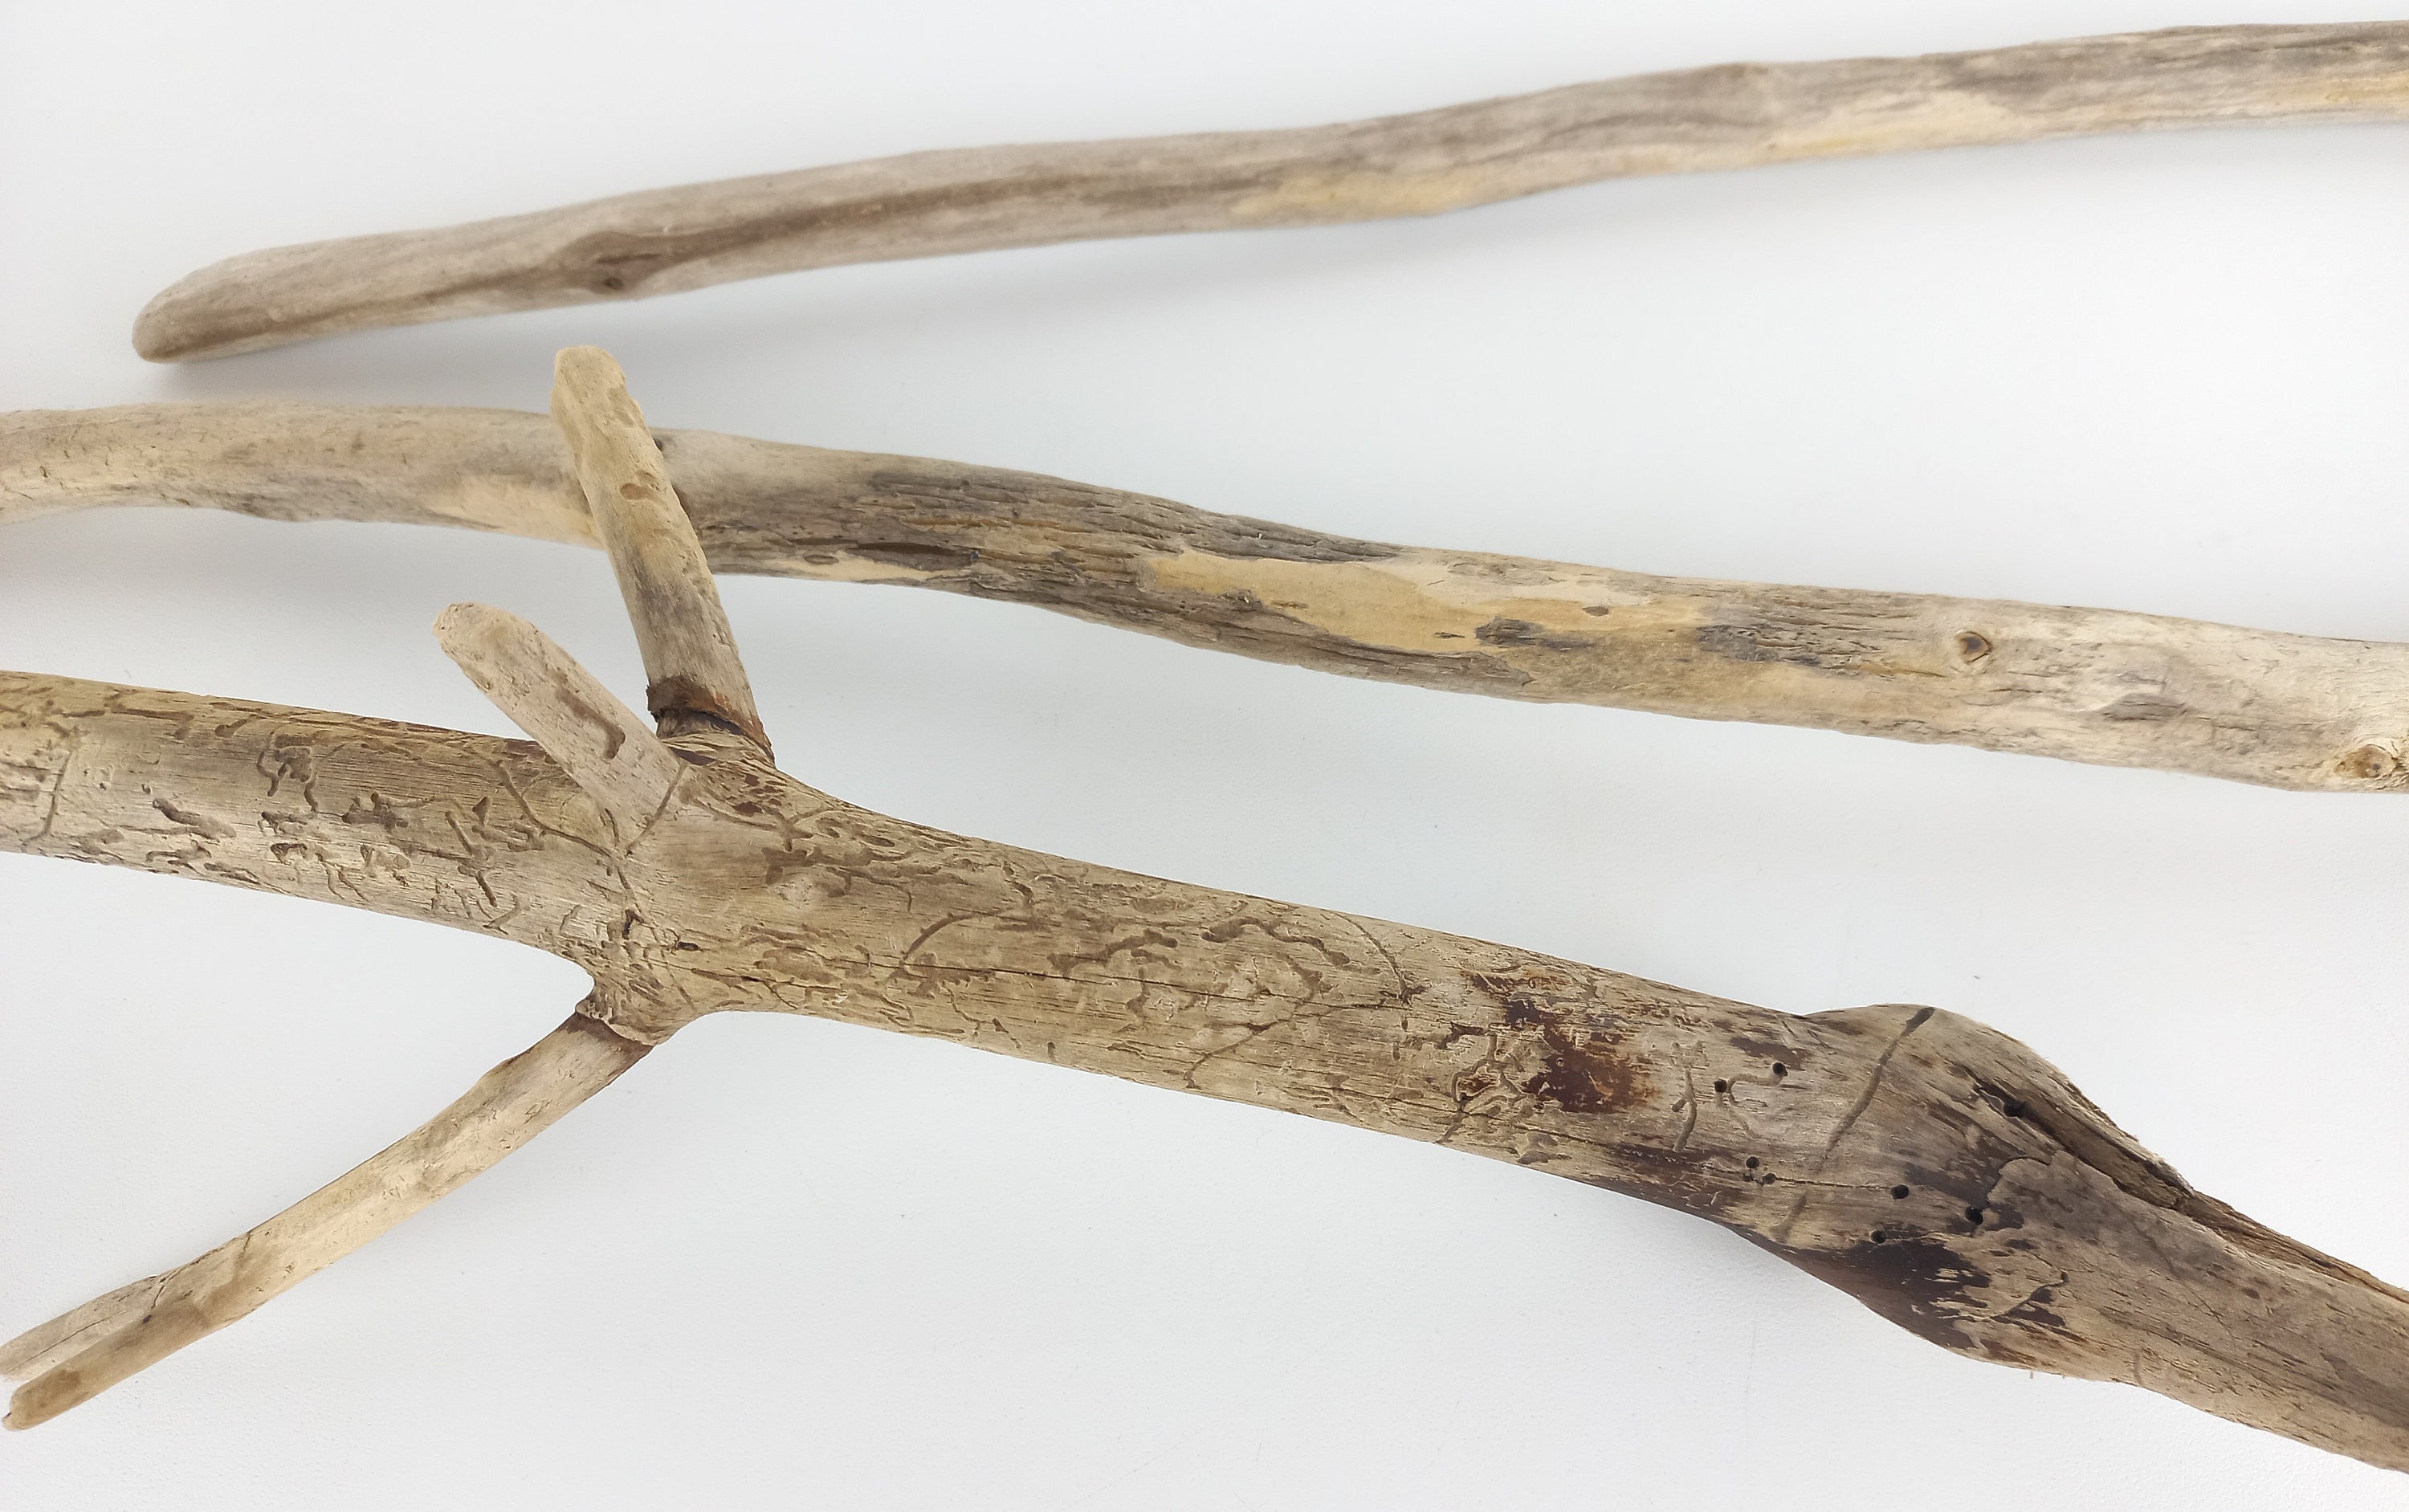 Branches décoratives en bois flotté 51,5-65 cm 20,2 25,5 po